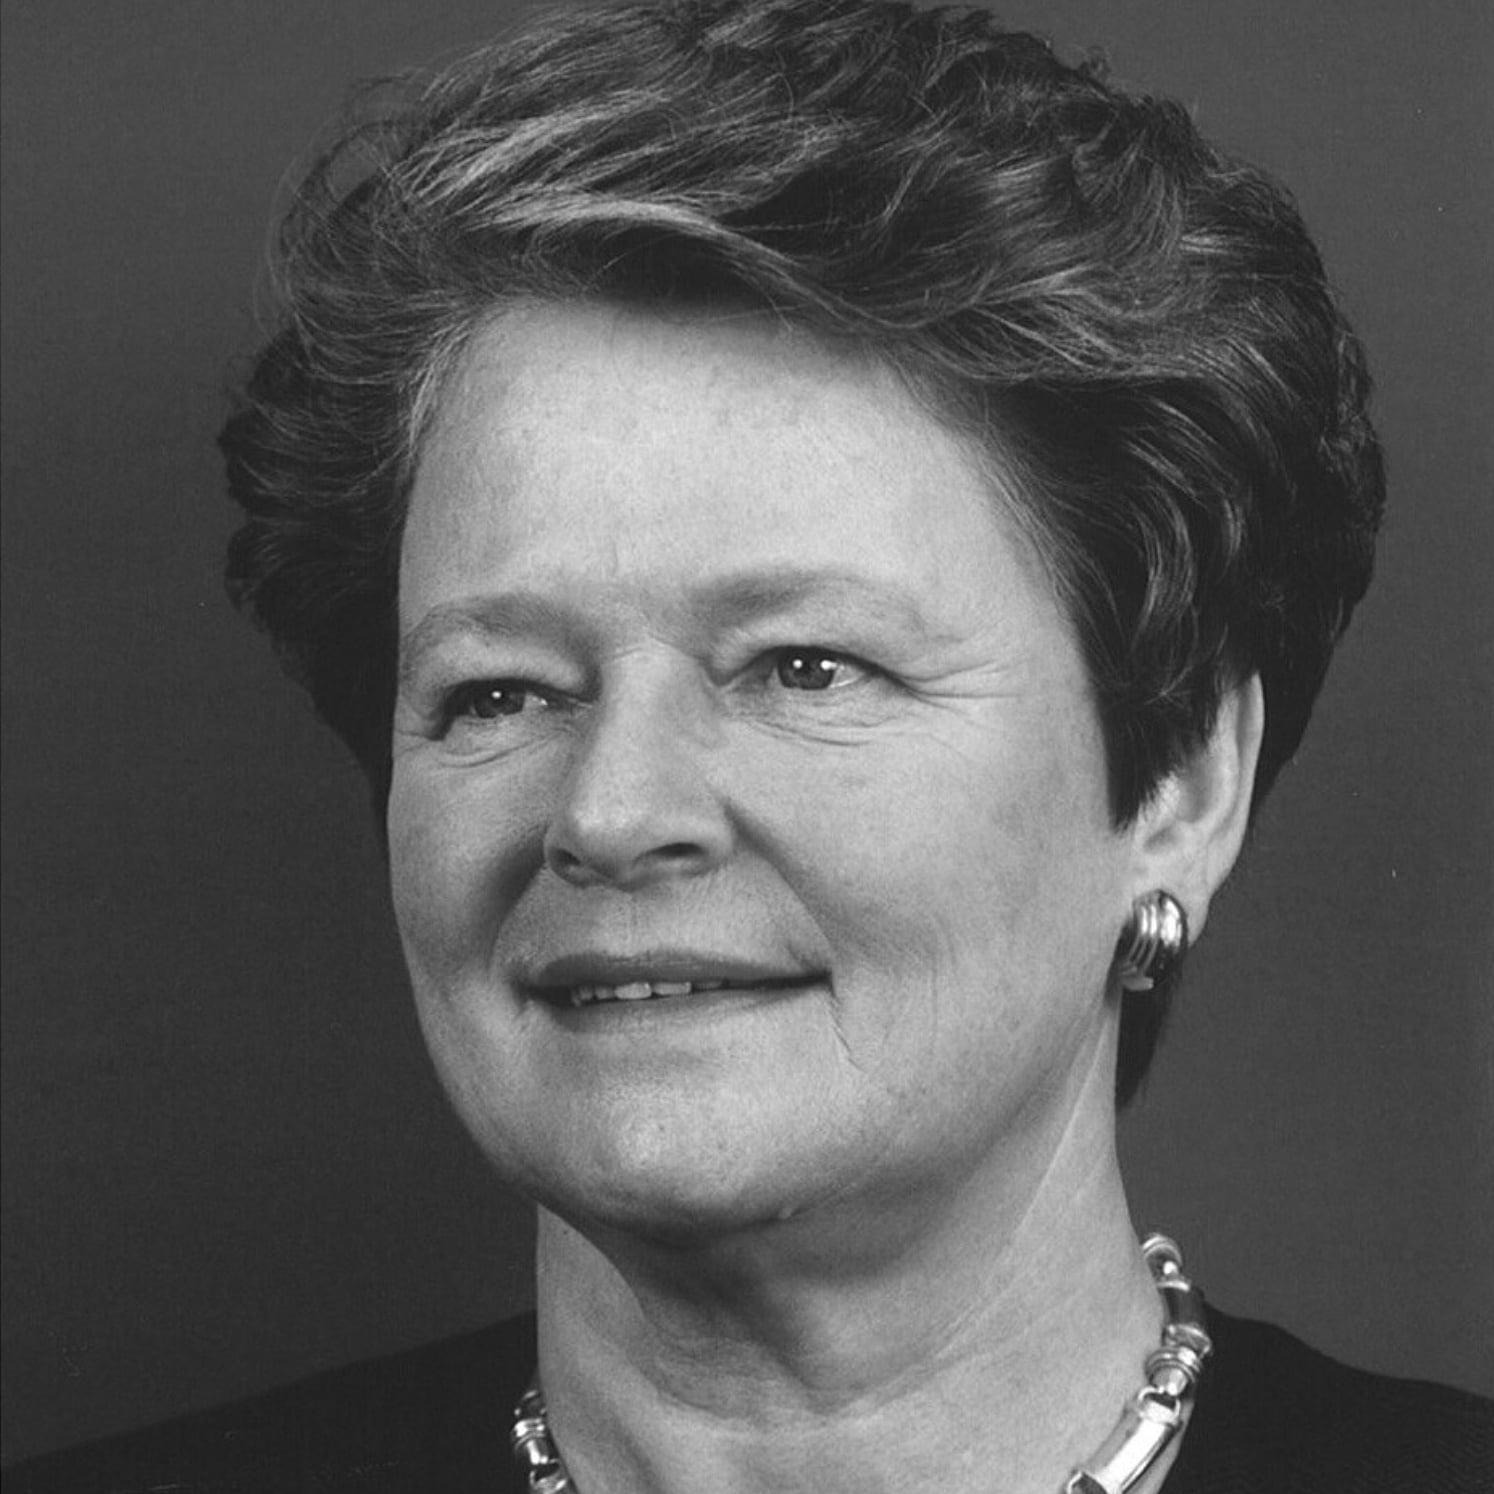 Dr. Gro Harlem Brundtland